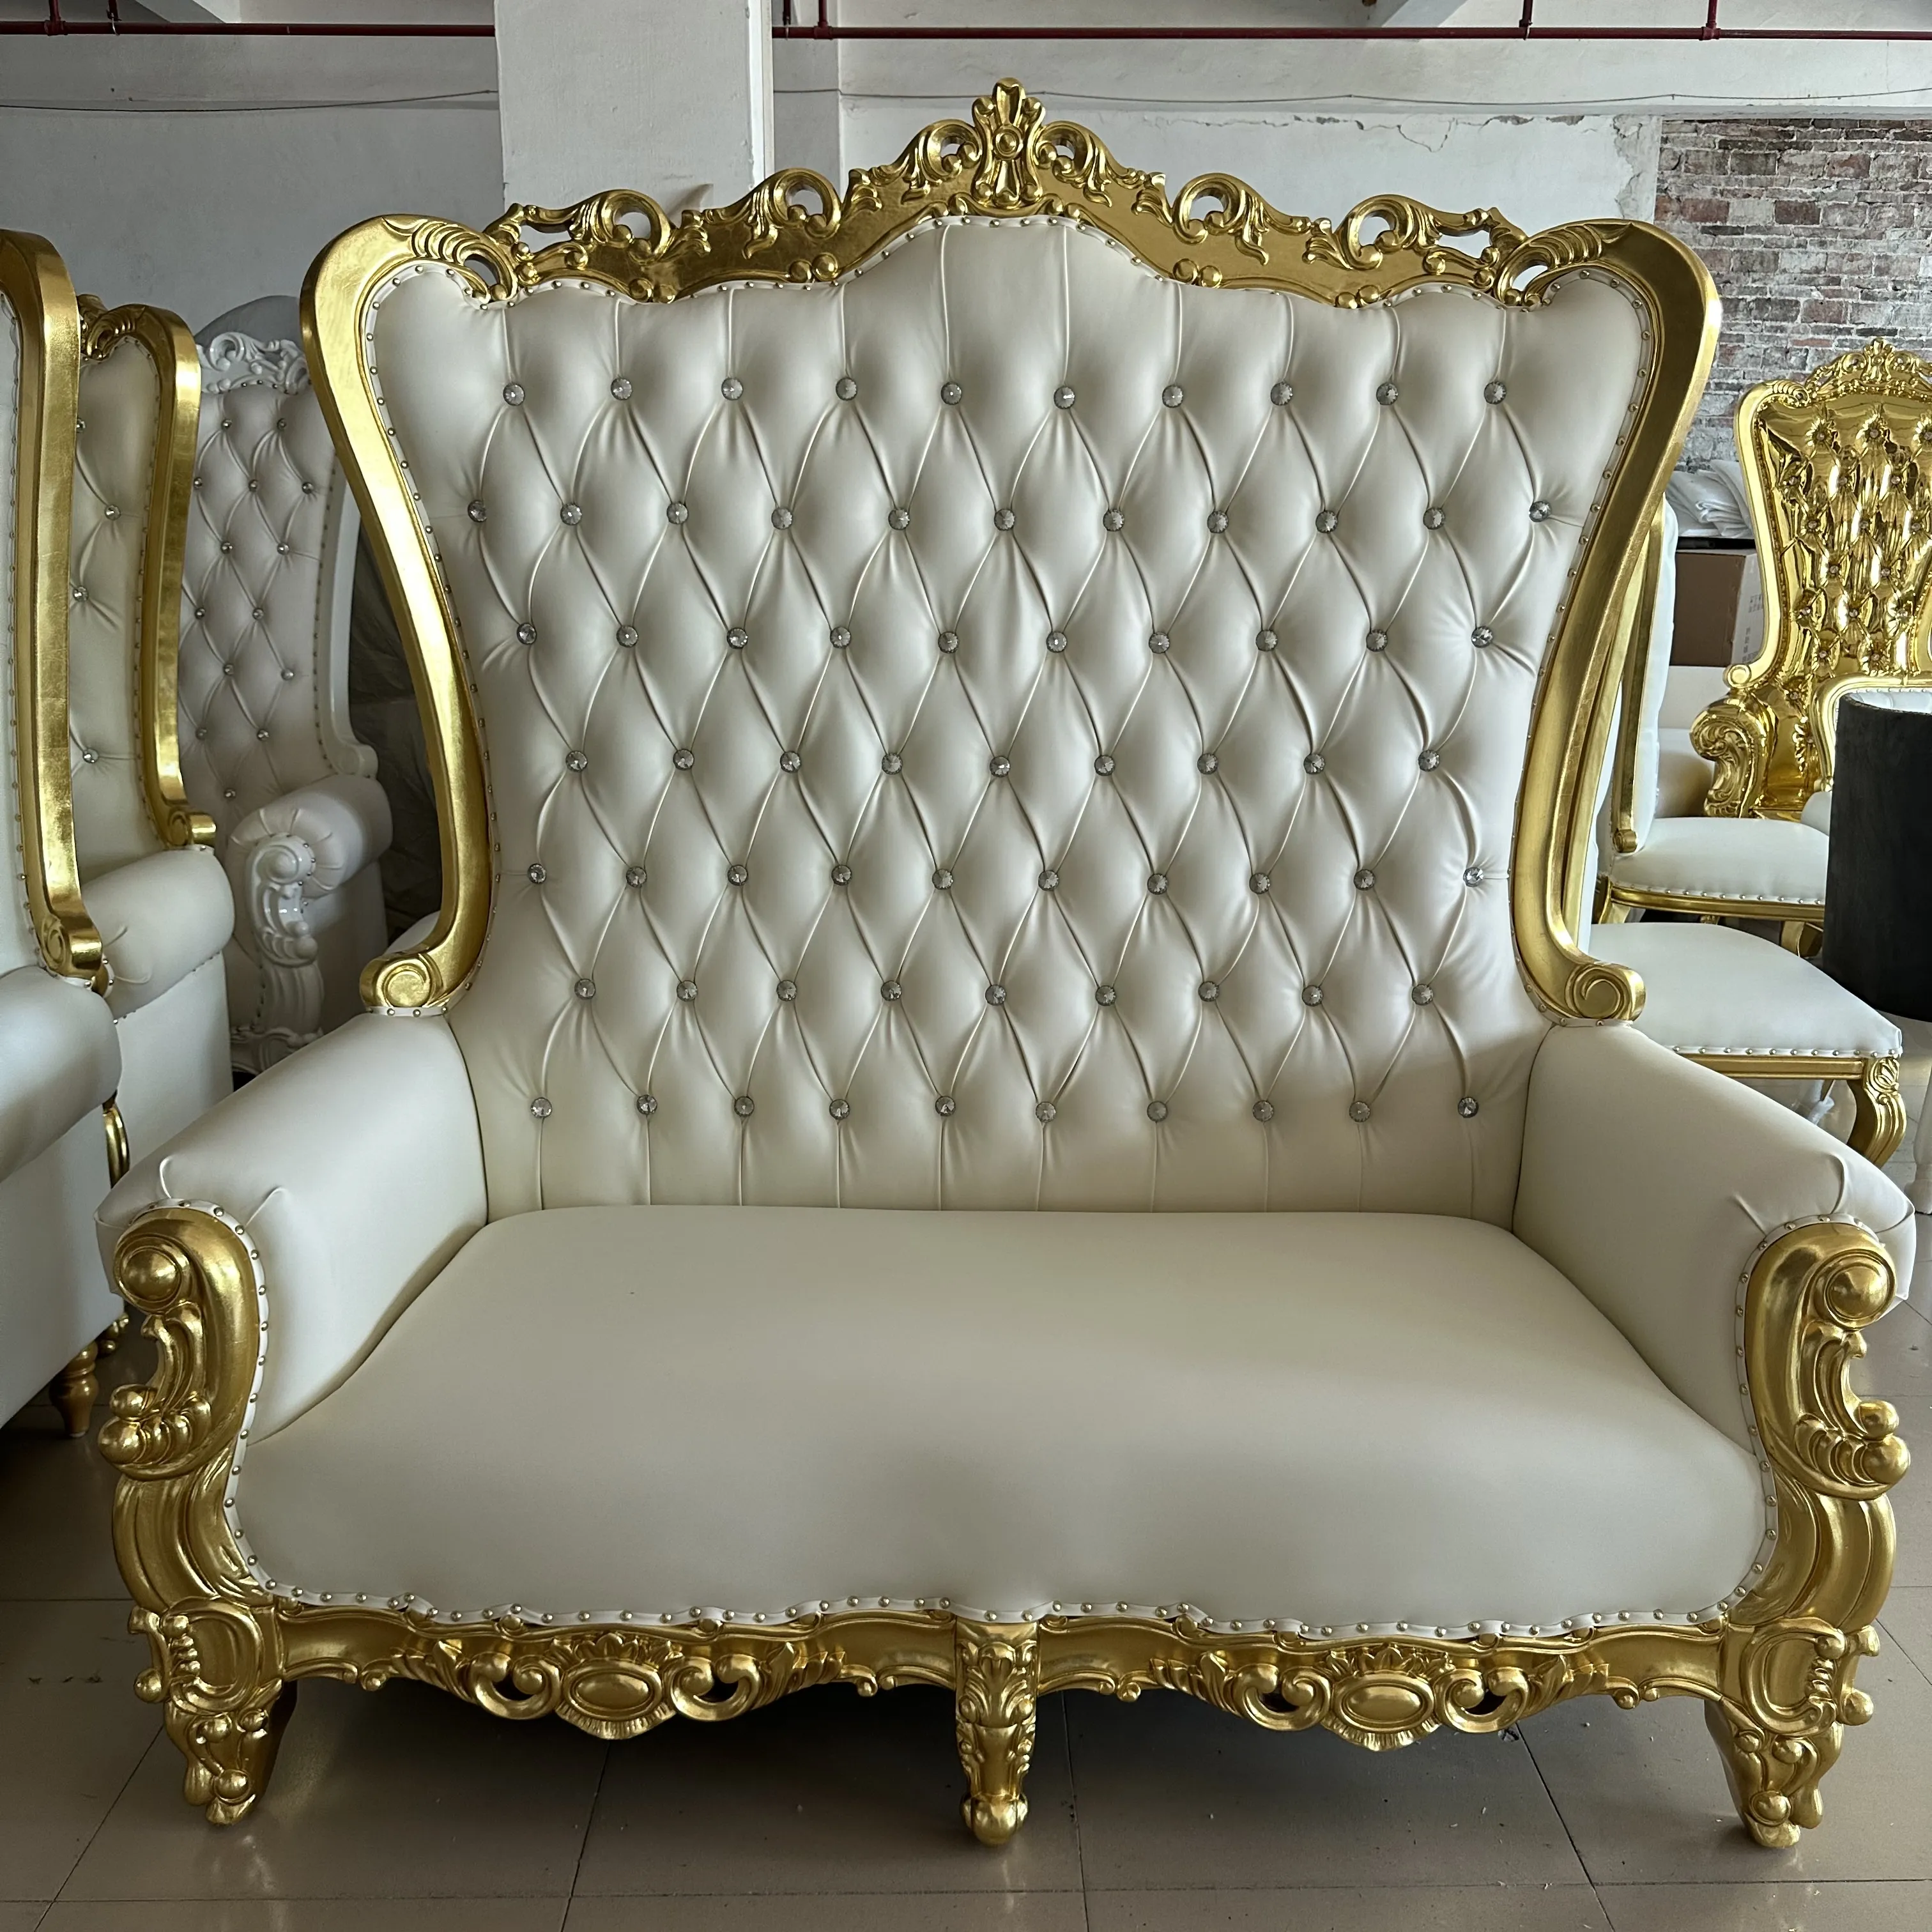 थोक सस्ता होटल लक्जरी सिंहासन कुर्सी समारोह स्वर्ण सफेद शादी सिंहासन की कुर्सी